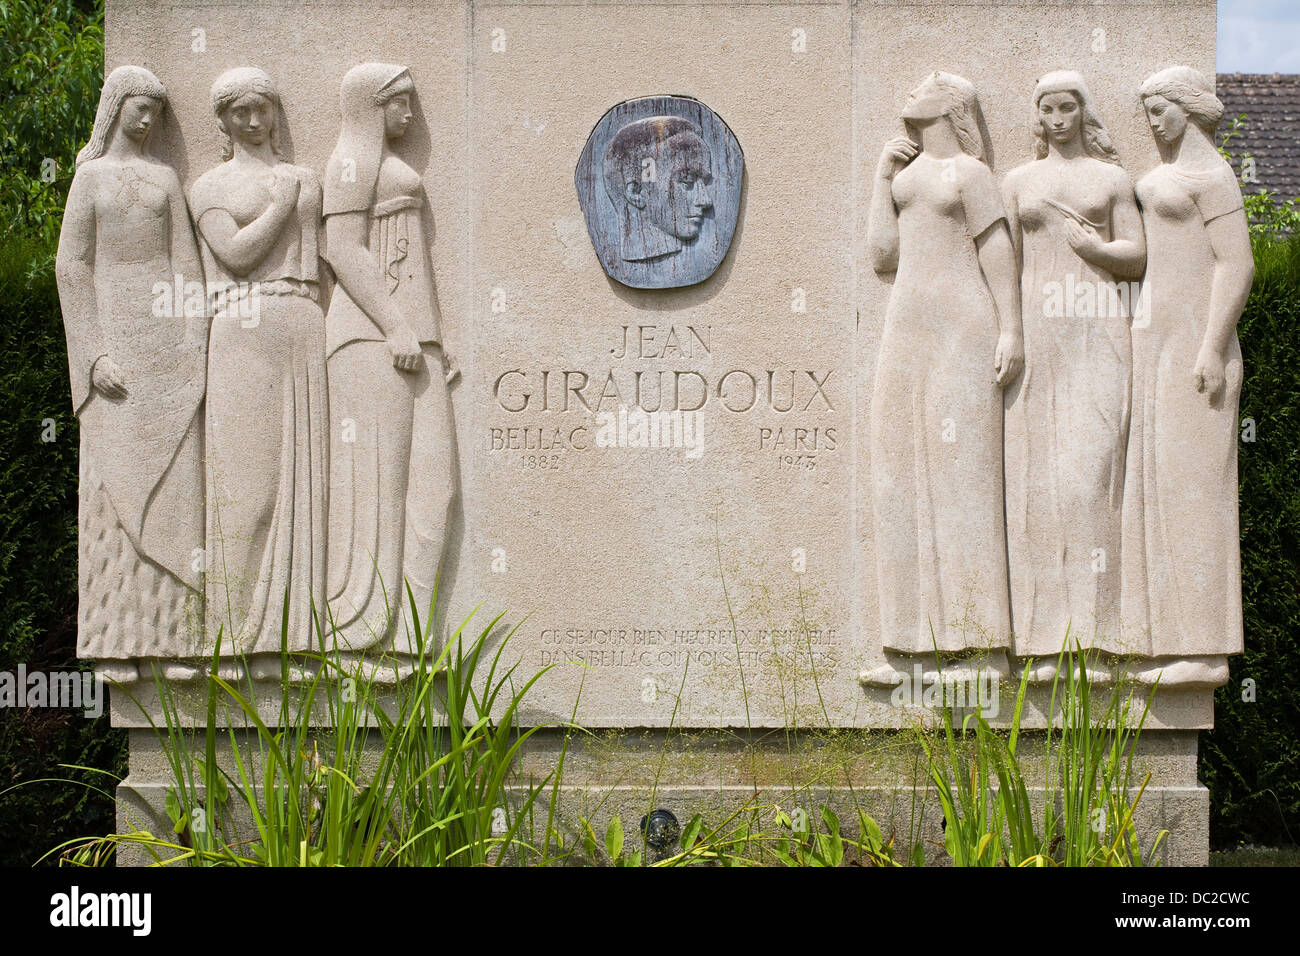 Un monumento alla memoria di Jean Giraudox. Il romanziere francese nato a Bellac, Francia. Foto Stock